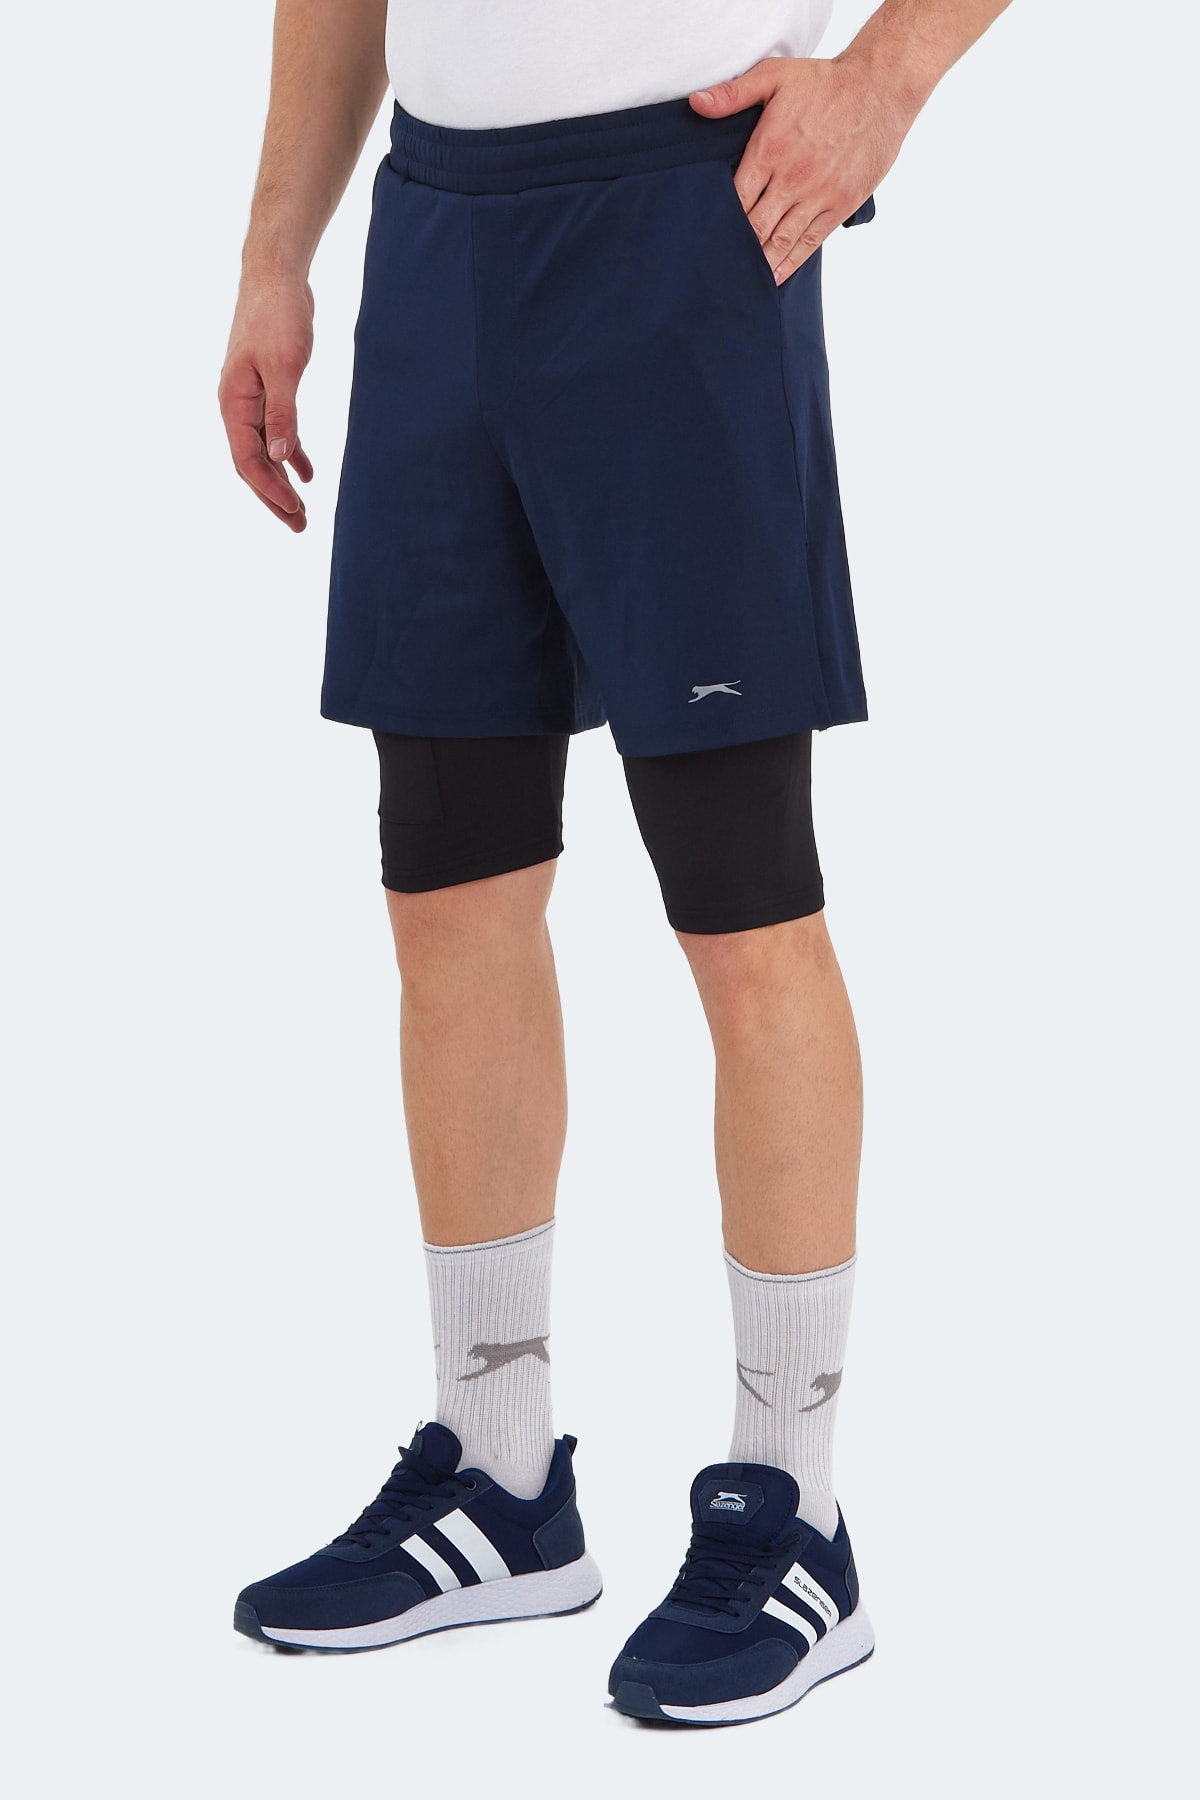 Slazenger SABLE Men's Shorts Navy